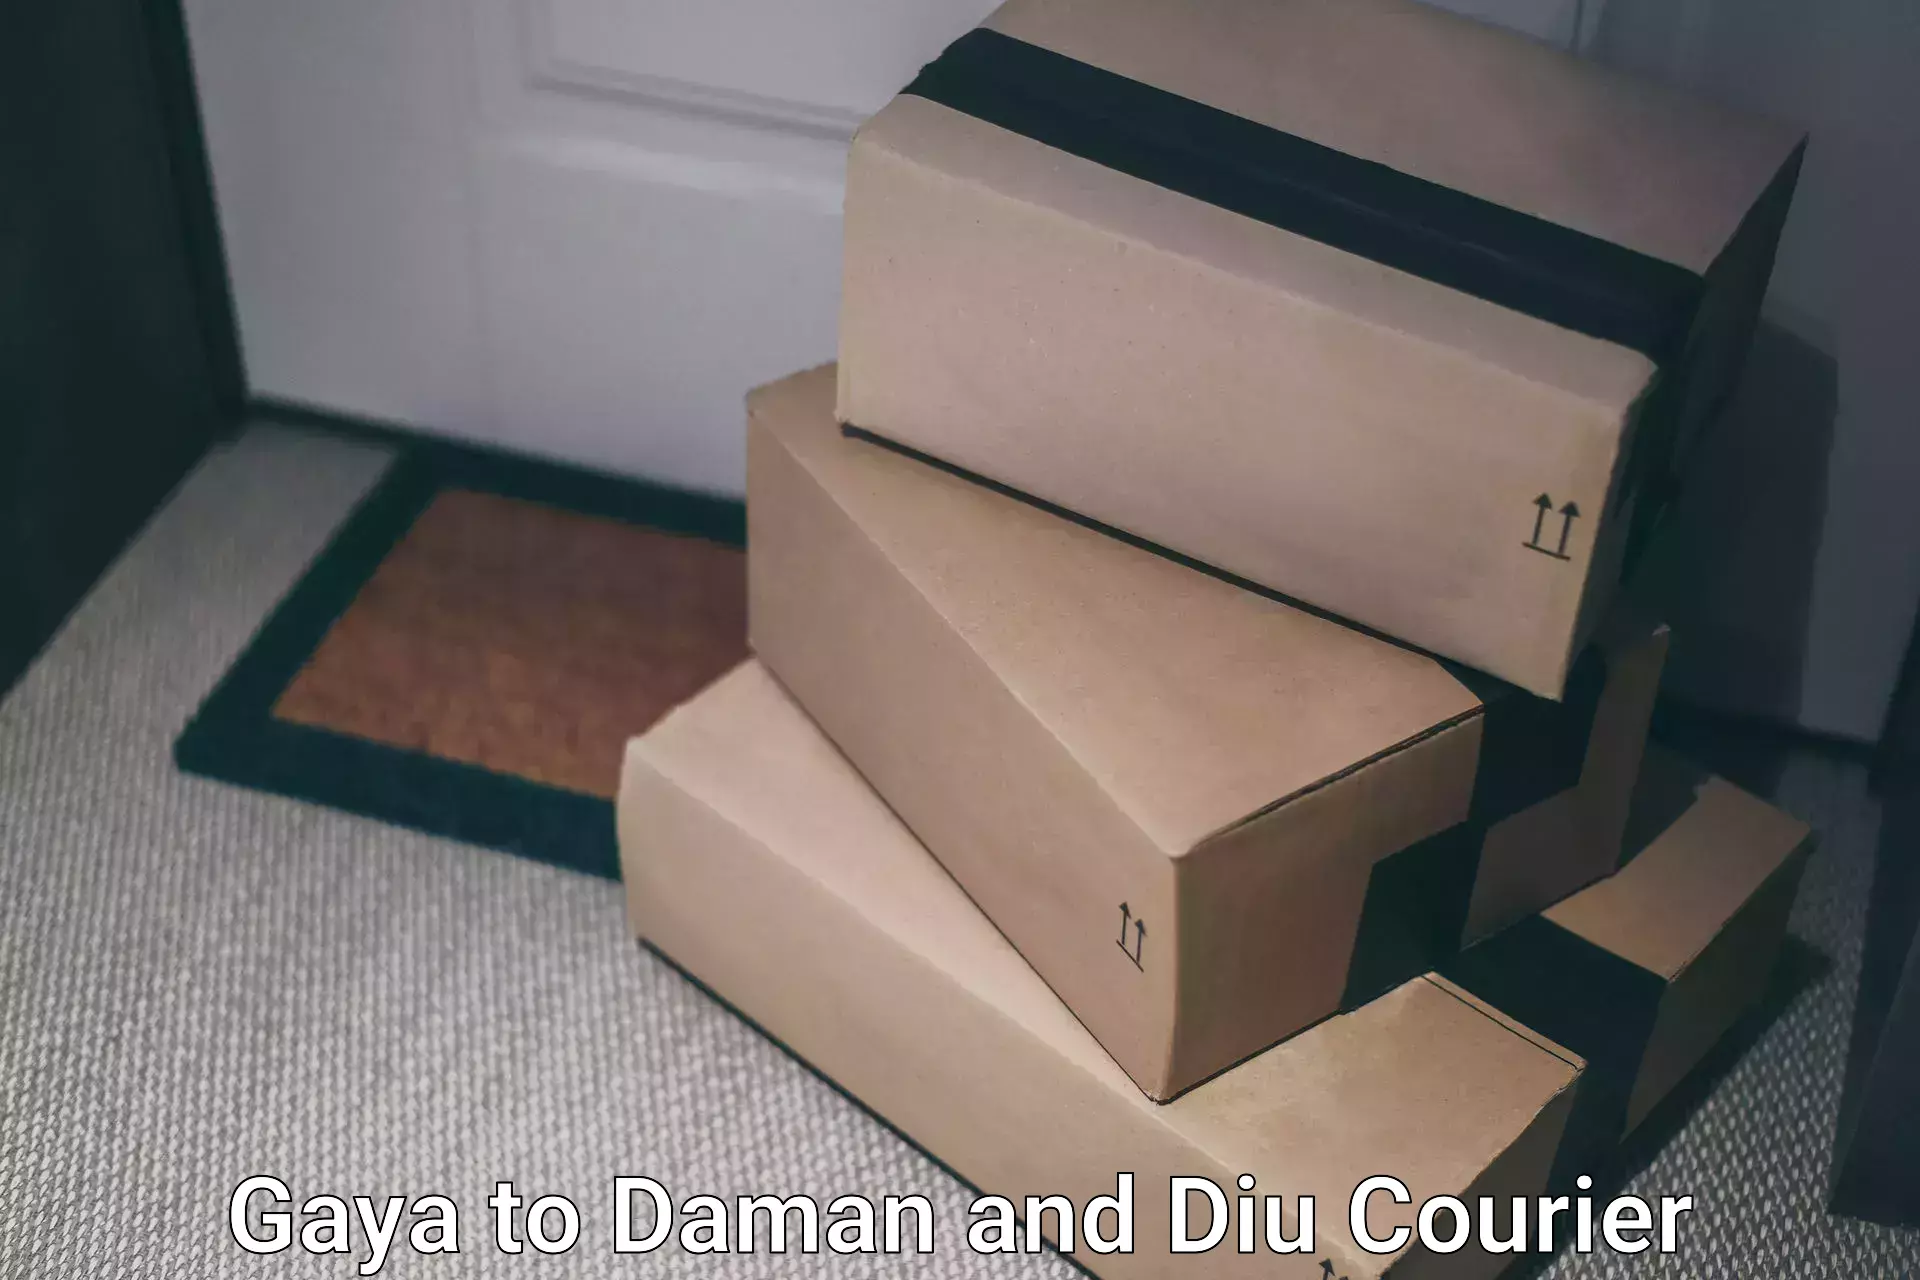 High-capacity shipping options Gaya to Daman